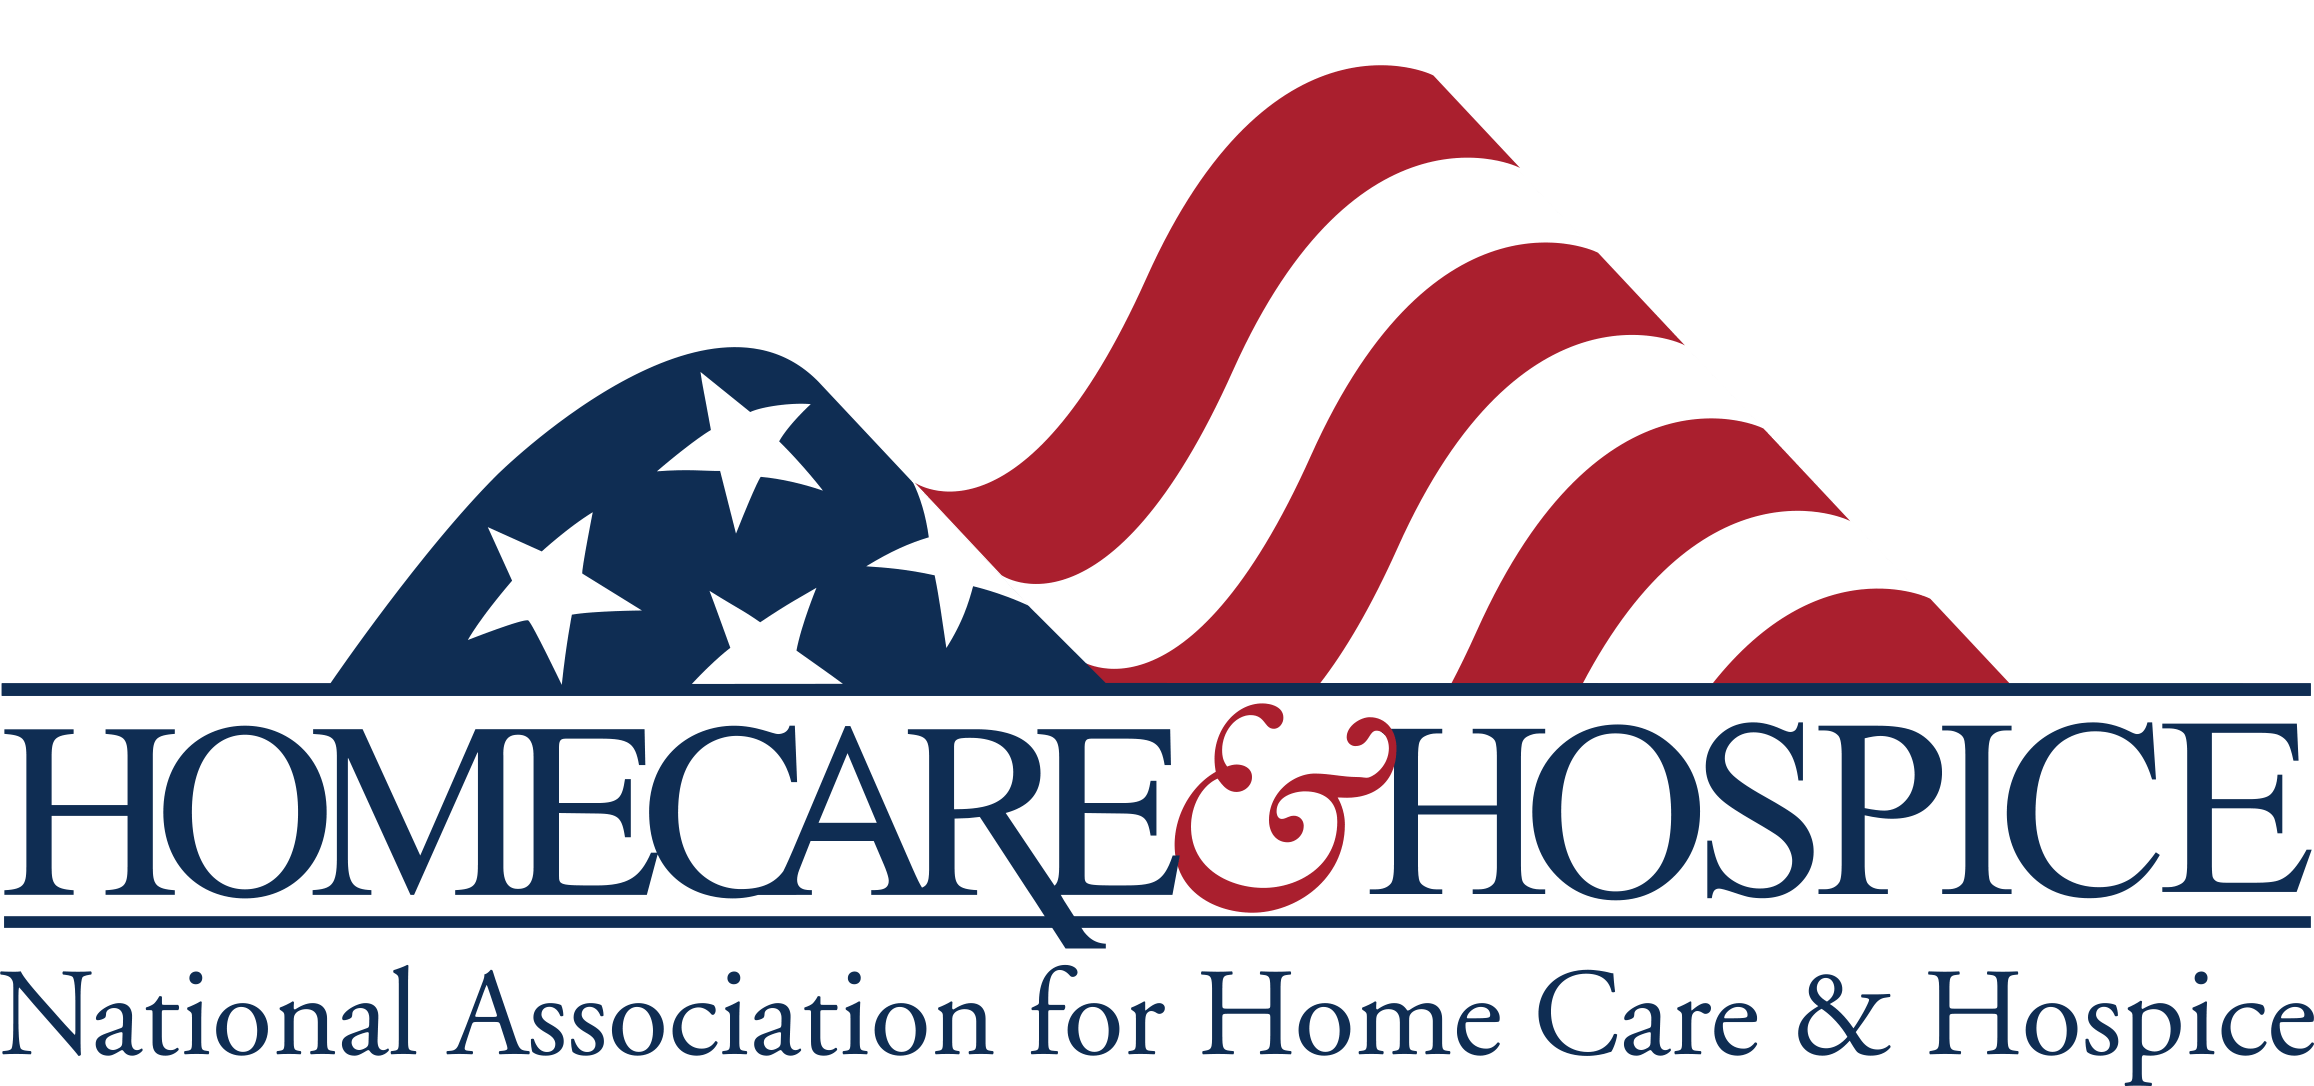 Hospice Logo - National Association for Home Care & Hospice